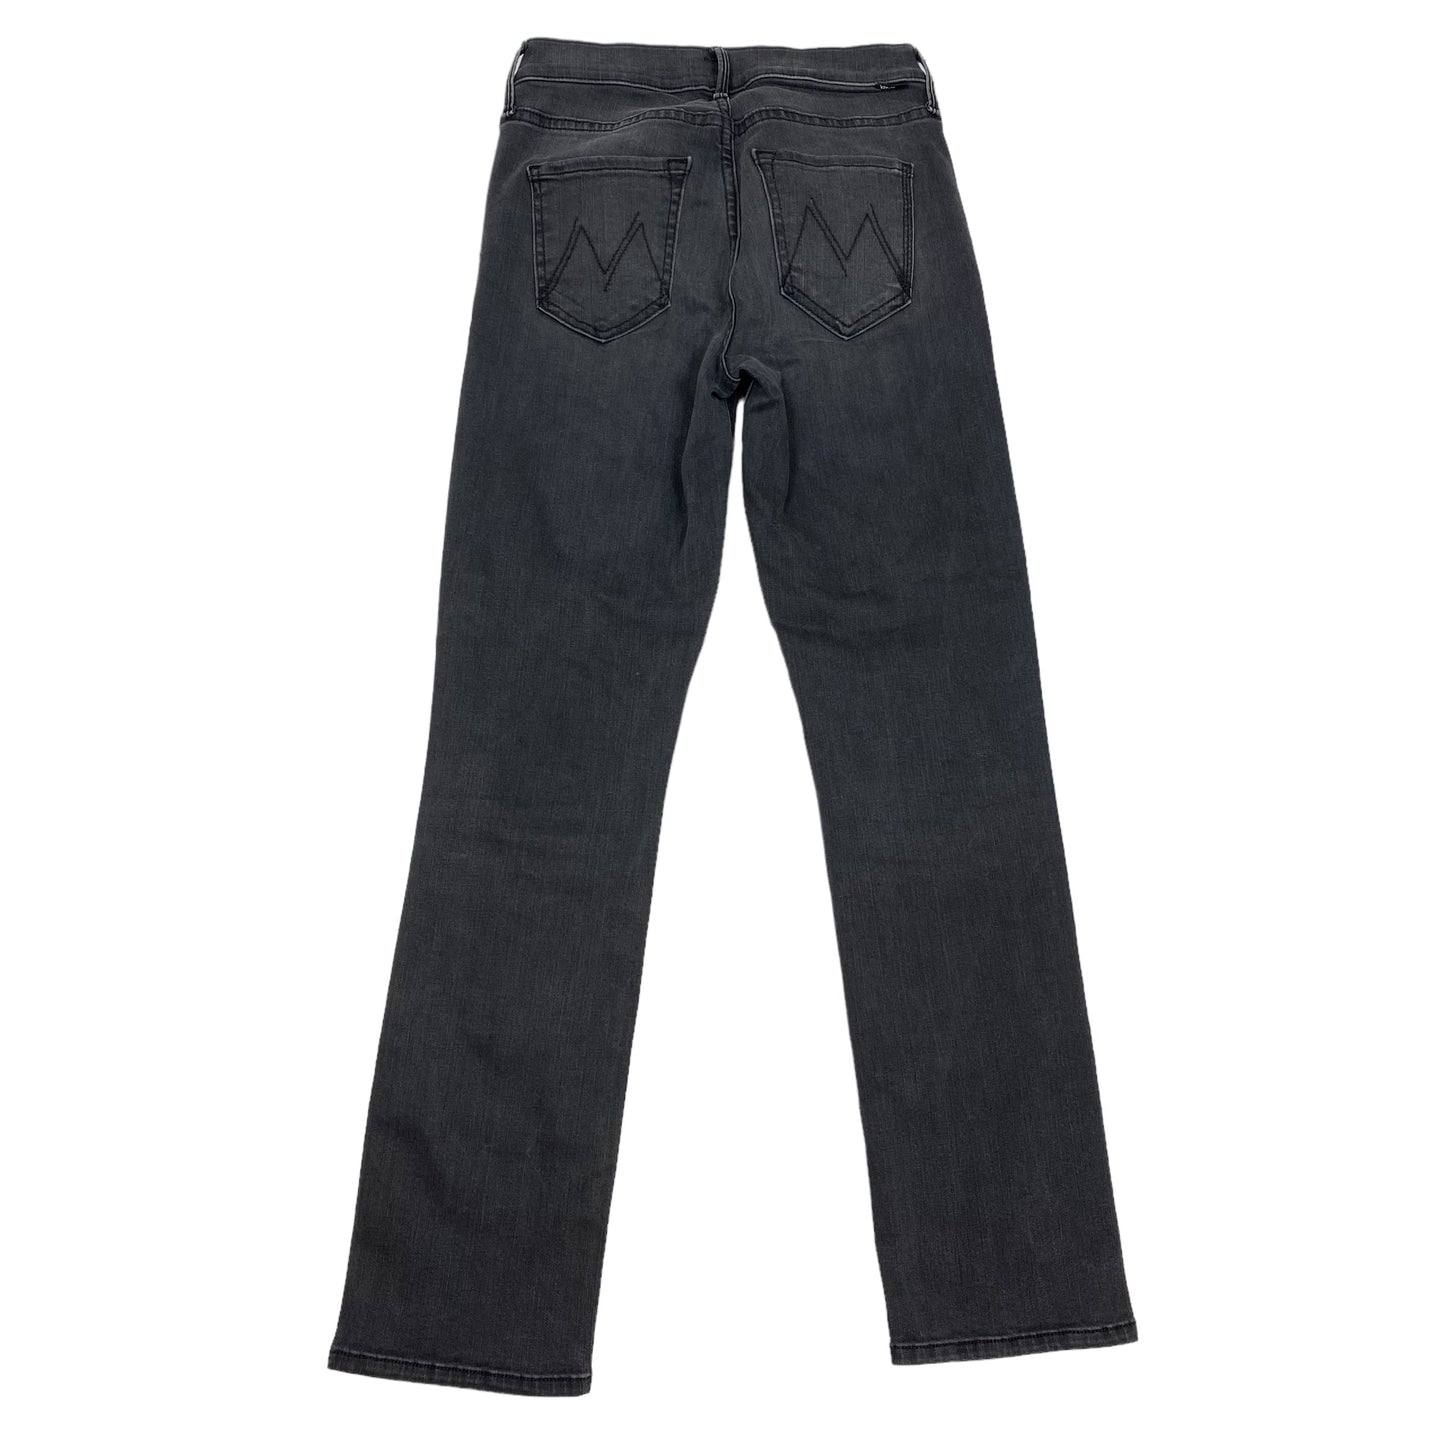 Grey Denim Jeans Designer Mother Jeans, Size 2